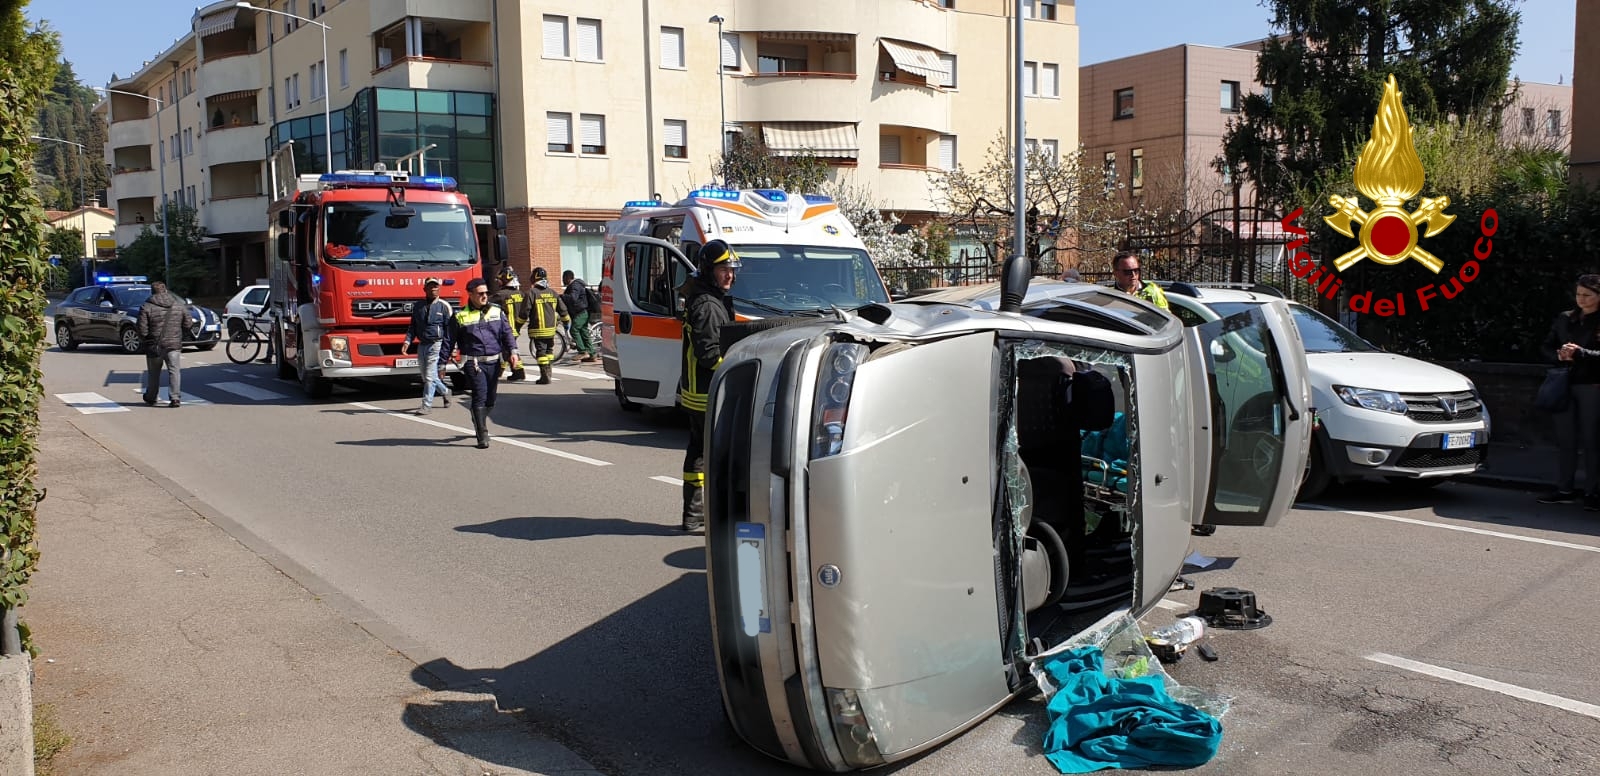 Incidente stradale ad Arzignano